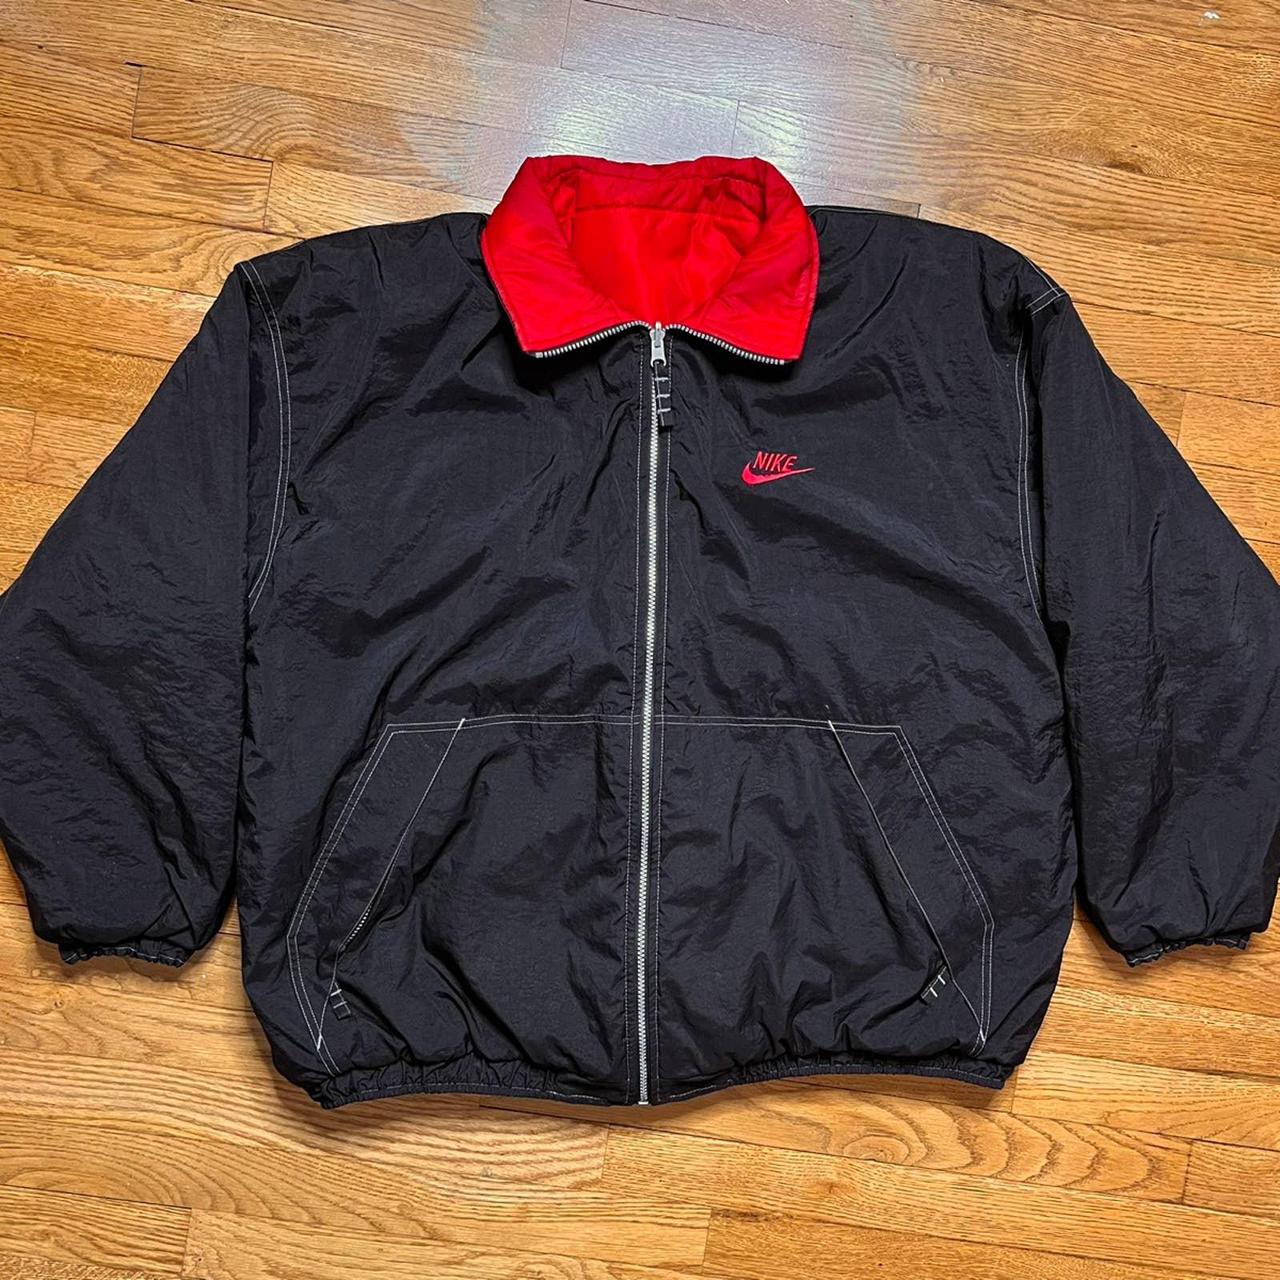 Vintage Nike reversible jacket in black and... - Depop